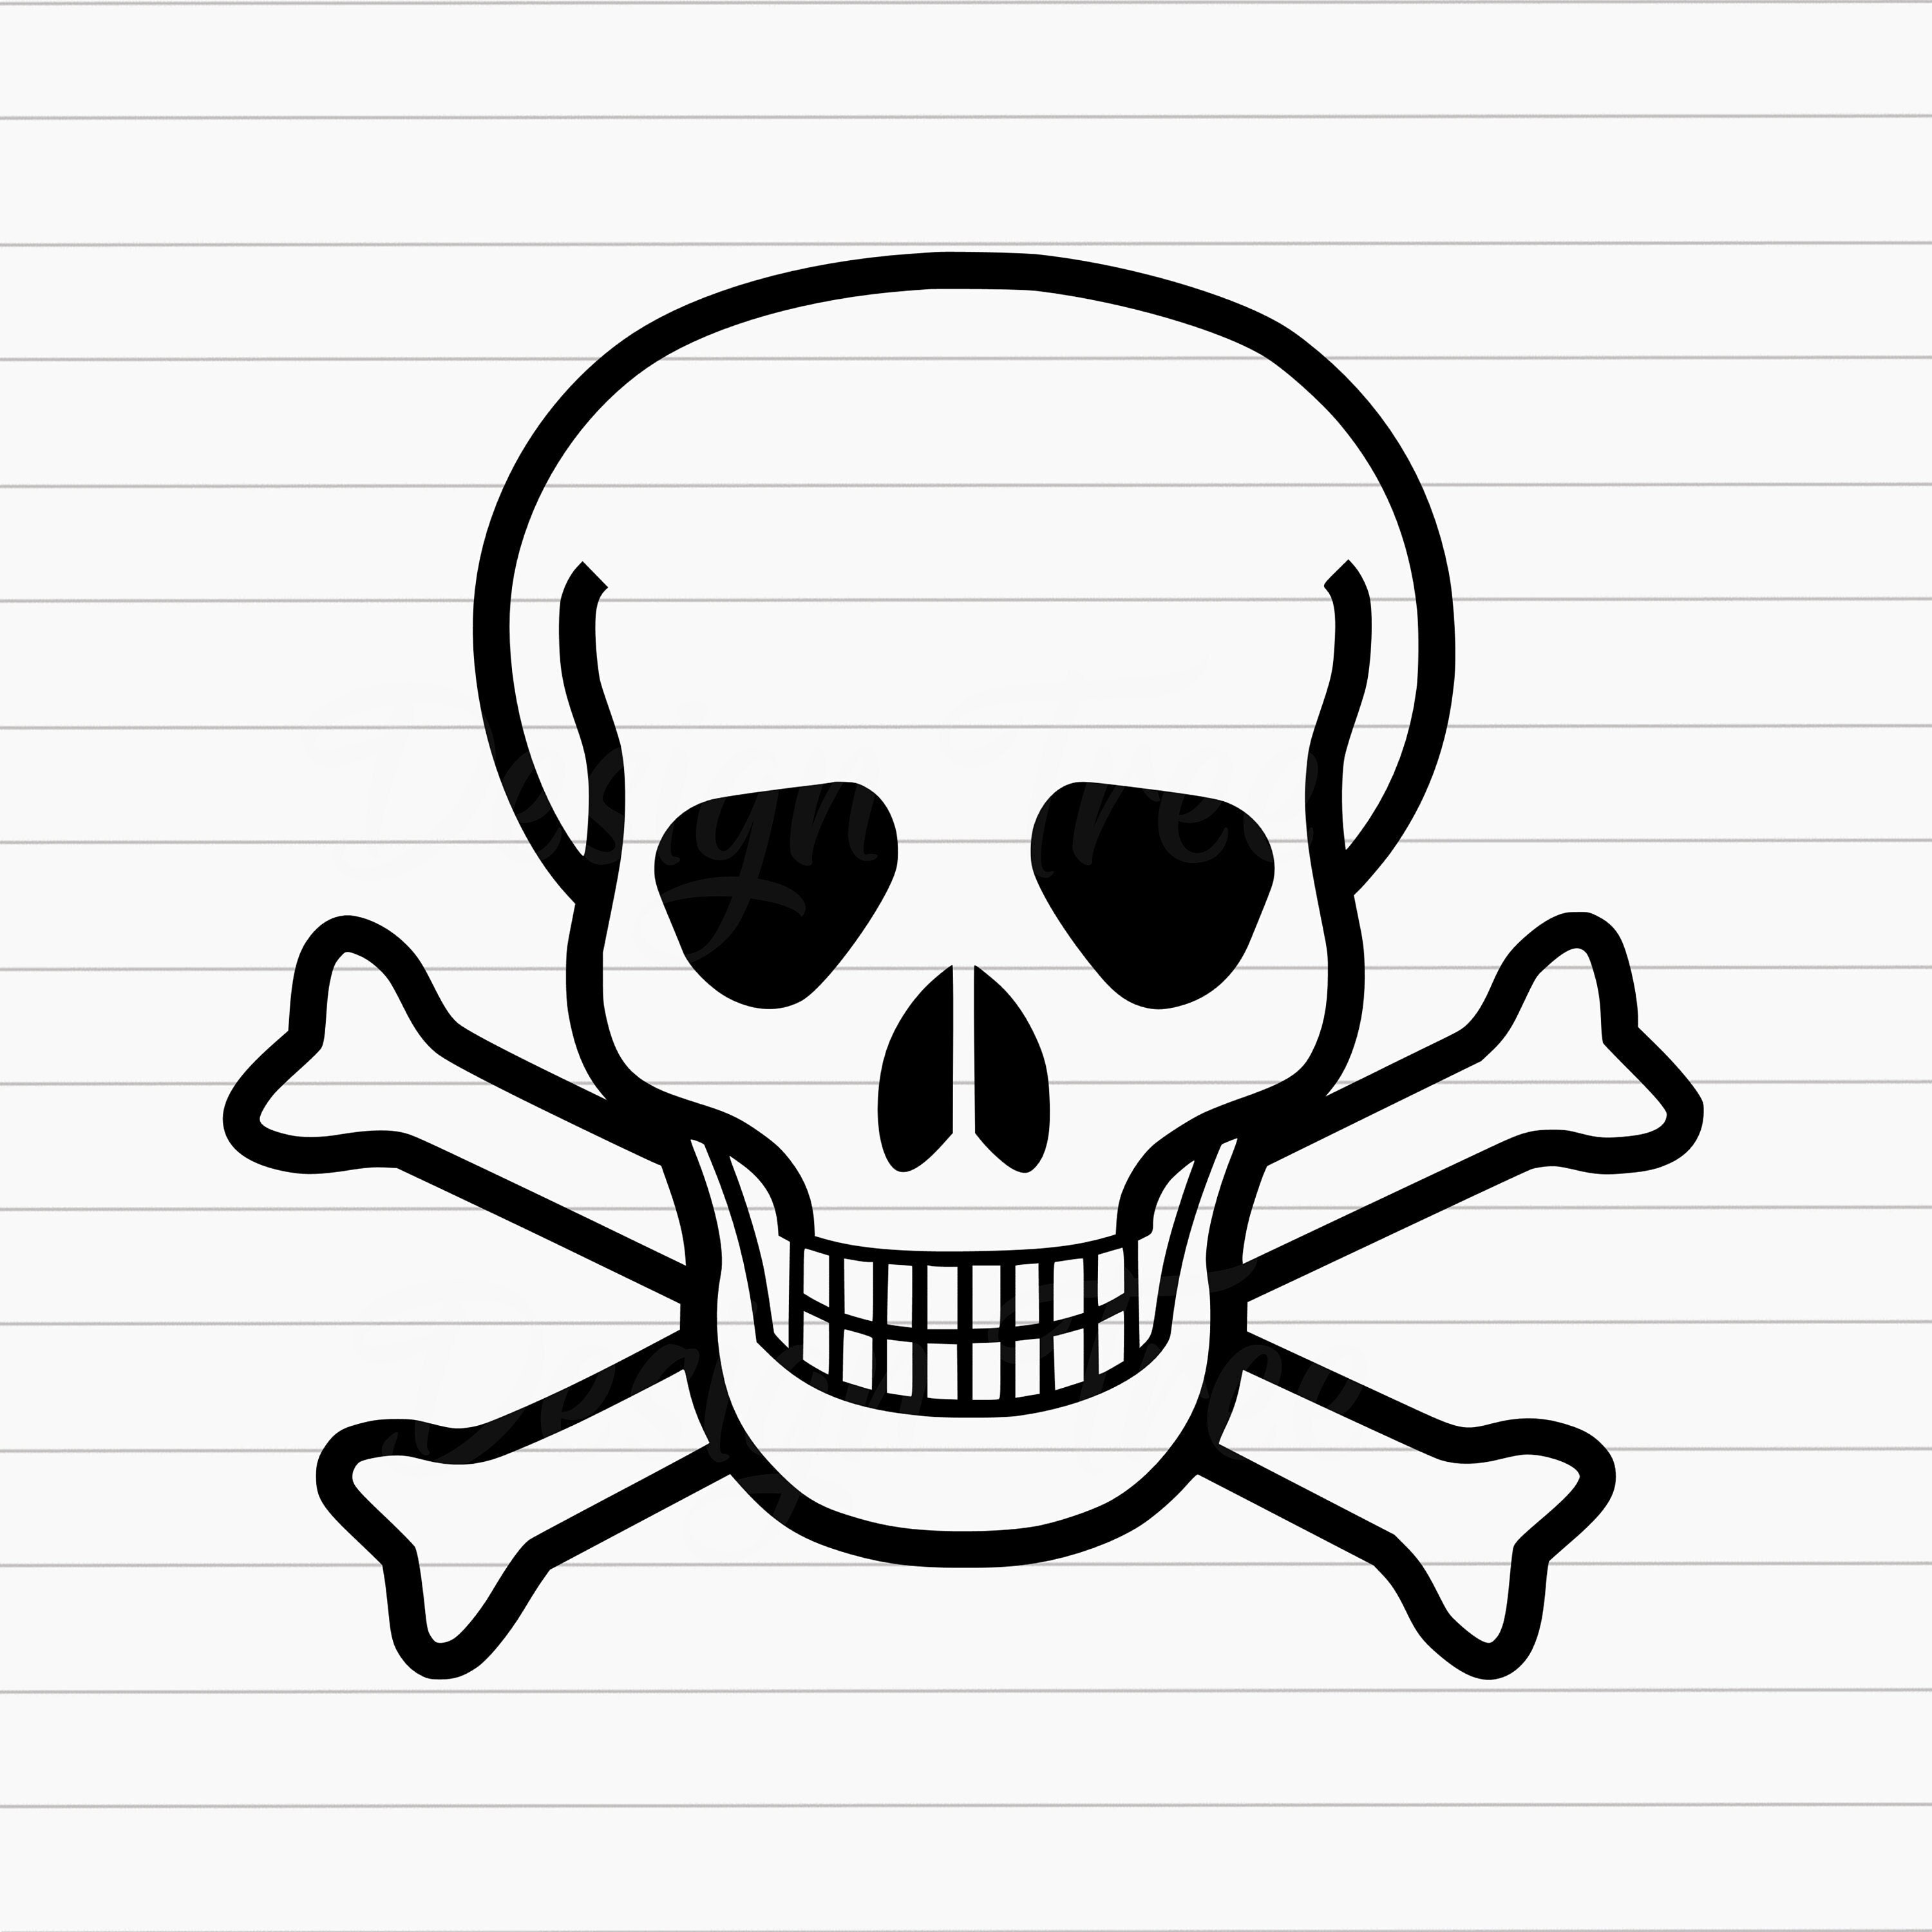 Skull Crossbones SVG, Pirate Skull Crossbones SVG, Jolly Roger SVG, Skull  Crossbones Cut File, Skull Crossbones Vector, Cricut, Silhouette -   Sweden